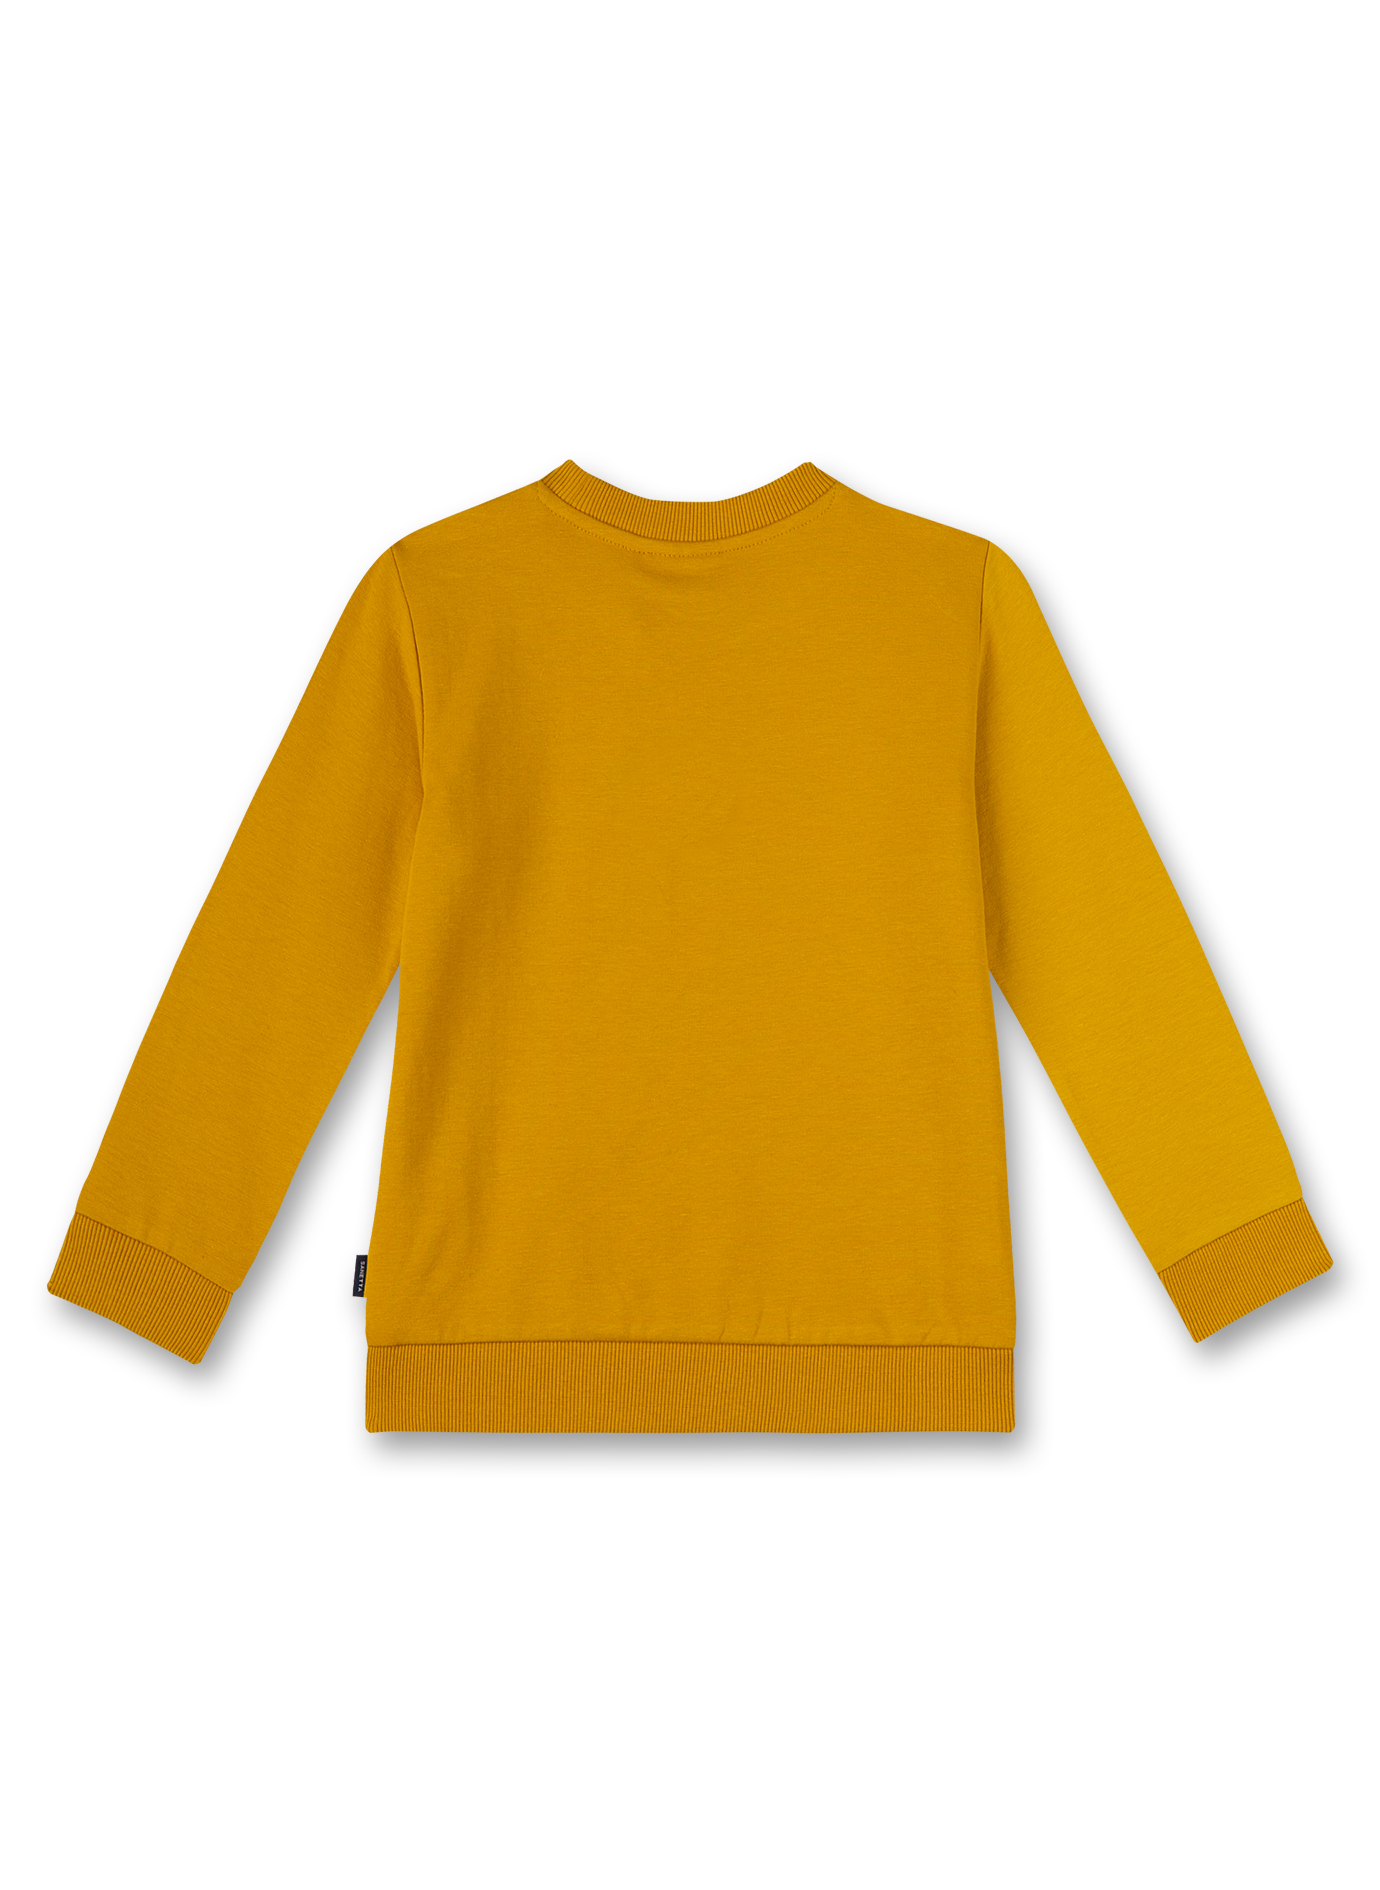 Jungen-Sweatshirt Gelb Space Driver